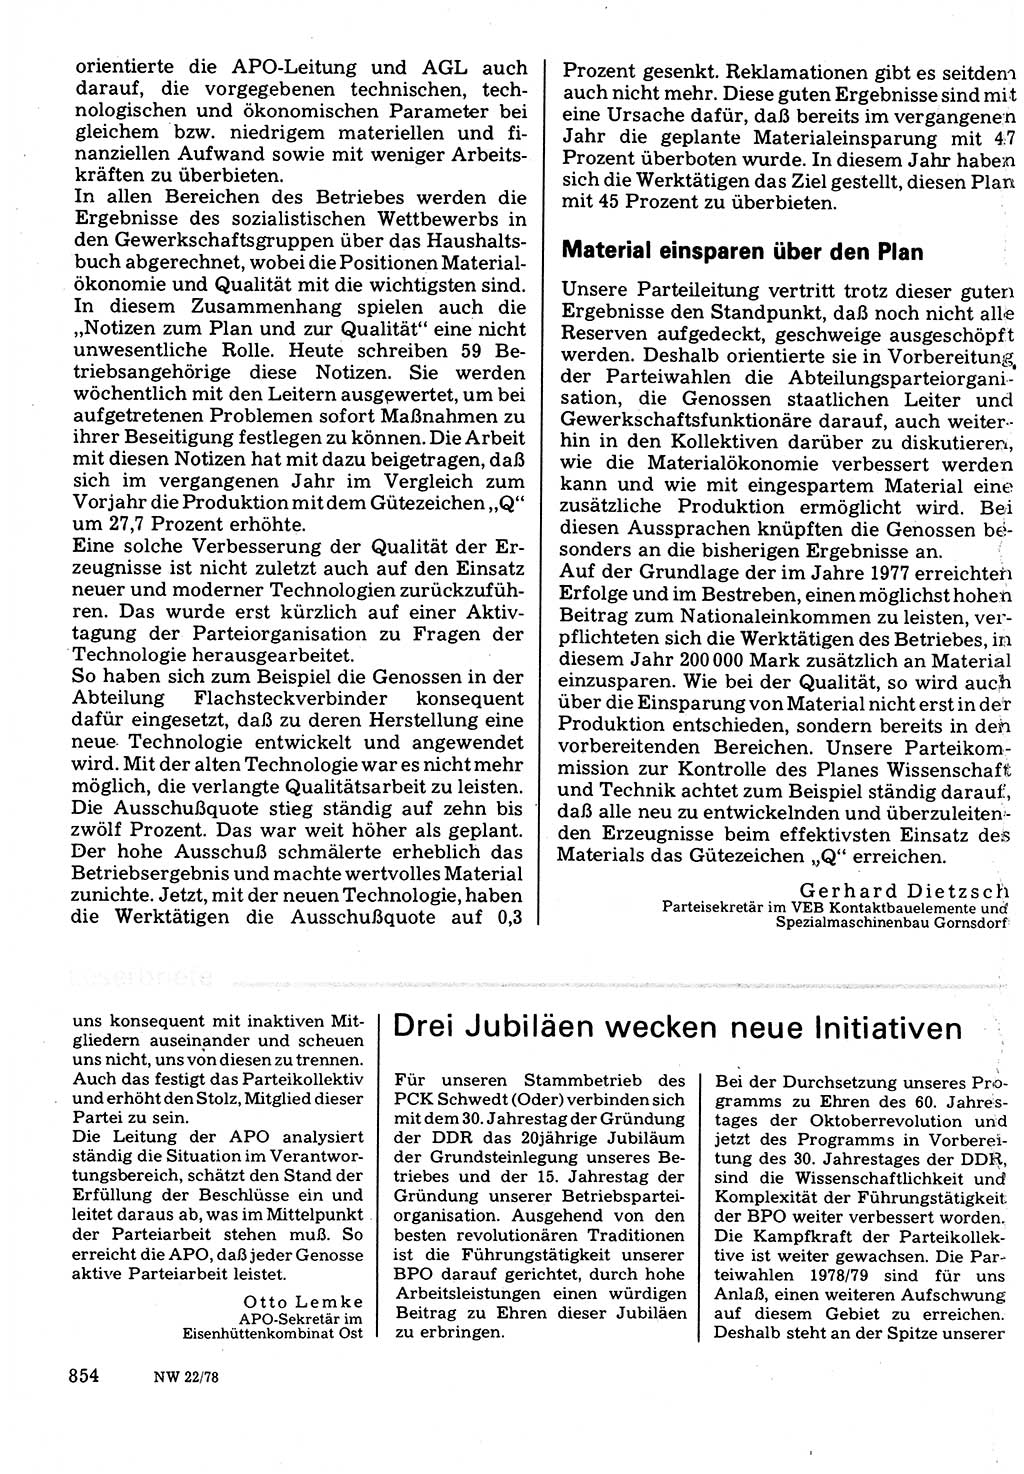 Neuer Weg (NW), Organ des Zentralkomitees (ZK) der SED (Sozialistische Einheitspartei Deutschlands) für Fragen des Parteilebens, 33. Jahrgang [Deutsche Demokratische Republik (DDR)] 1978, Seite 854 (NW ZK SED DDR 1978, S. 854)